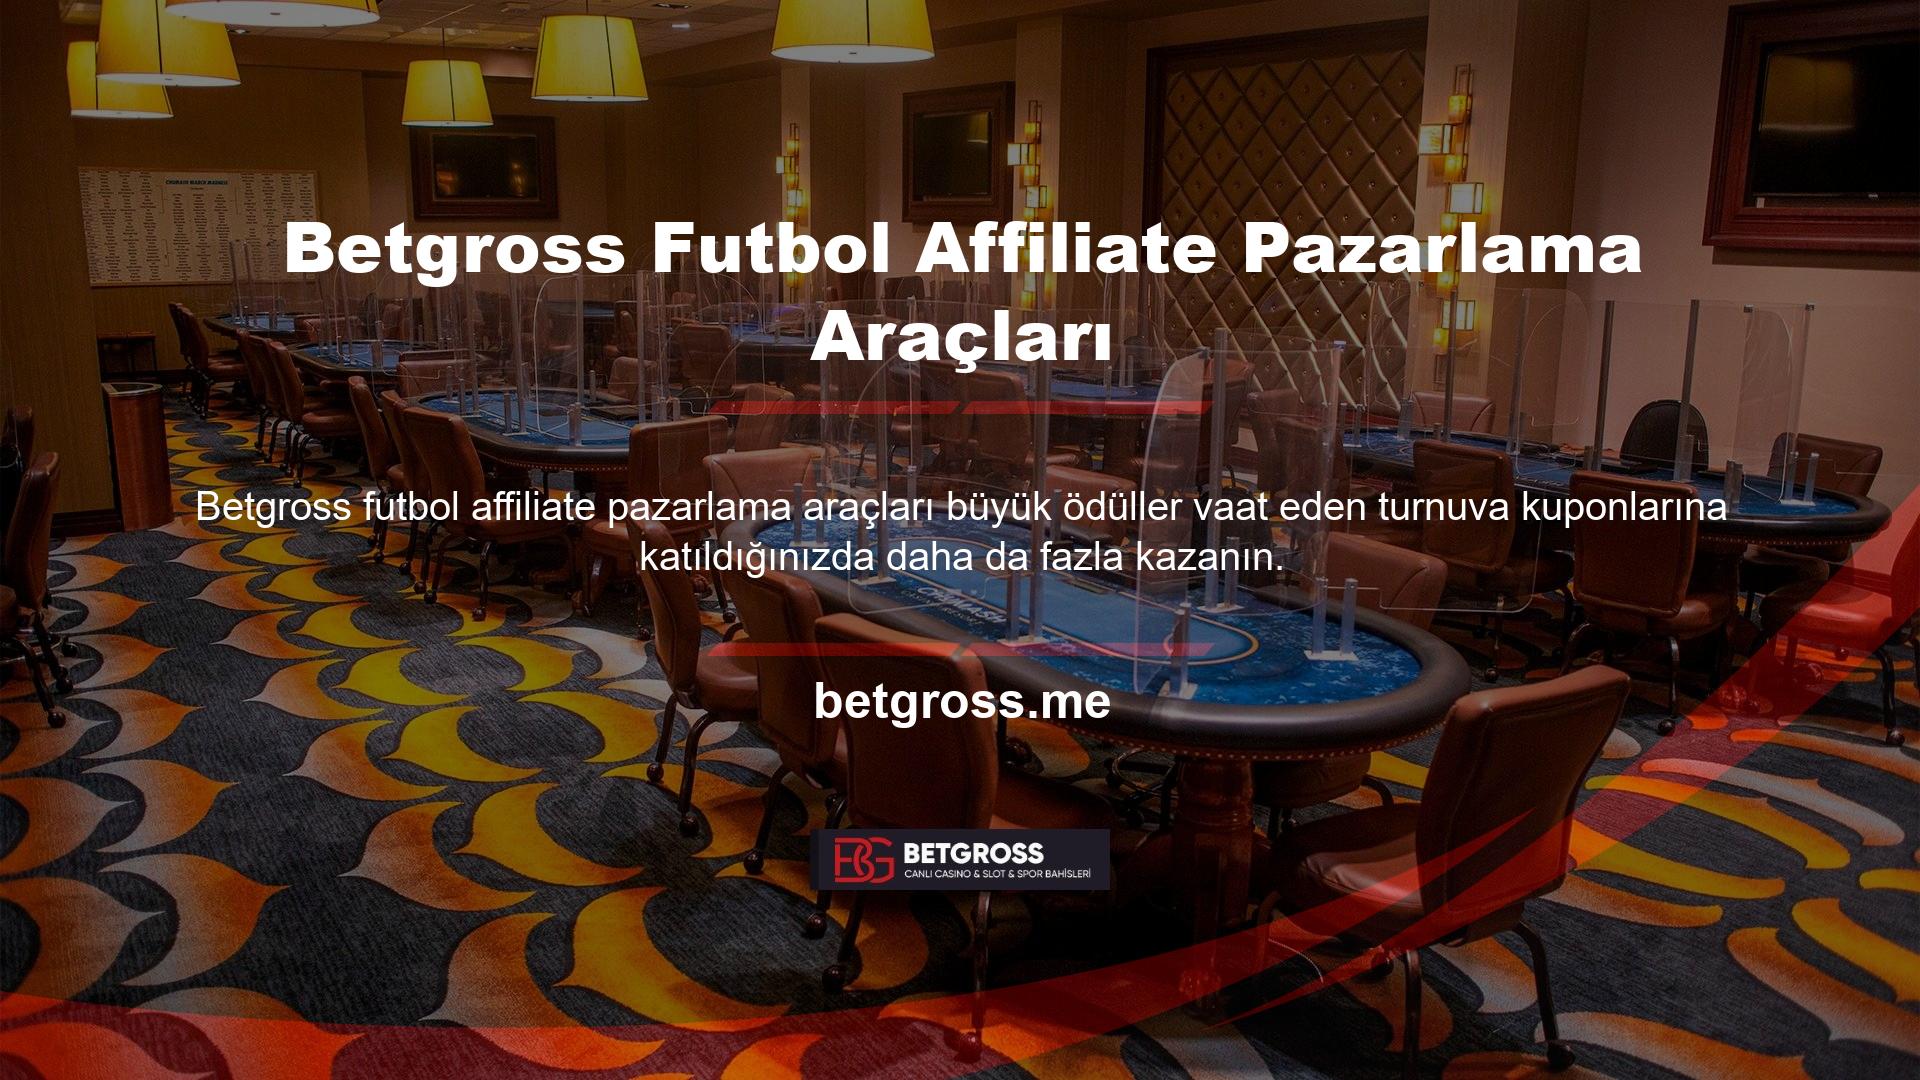 Betgross futbol ortaklık pazarlama araçları Şampiyonlar Ligi'nin doğduğu yerdir